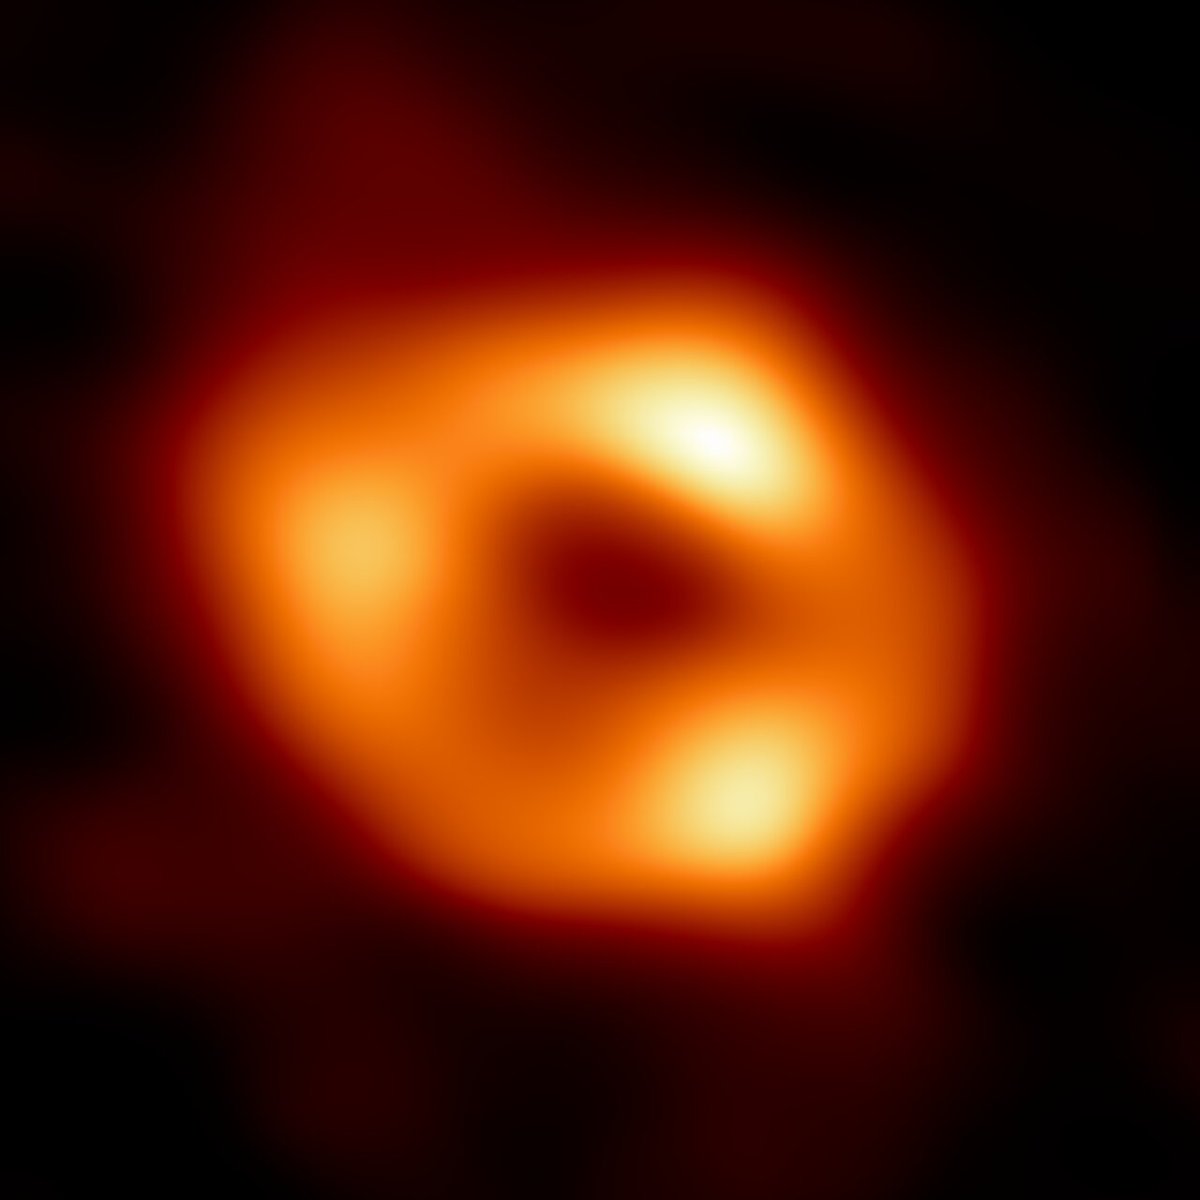 ¡Con vosotros, Sagitario A*, la primera imagen del agujero negro en el centro de nuestra galaxia! #AgujeroNegro #Imagen #SagitarioA #ViaLactea #HorizontedeSucesos #EHT #Cosmos #Universo #Astronomía #Astrofísica